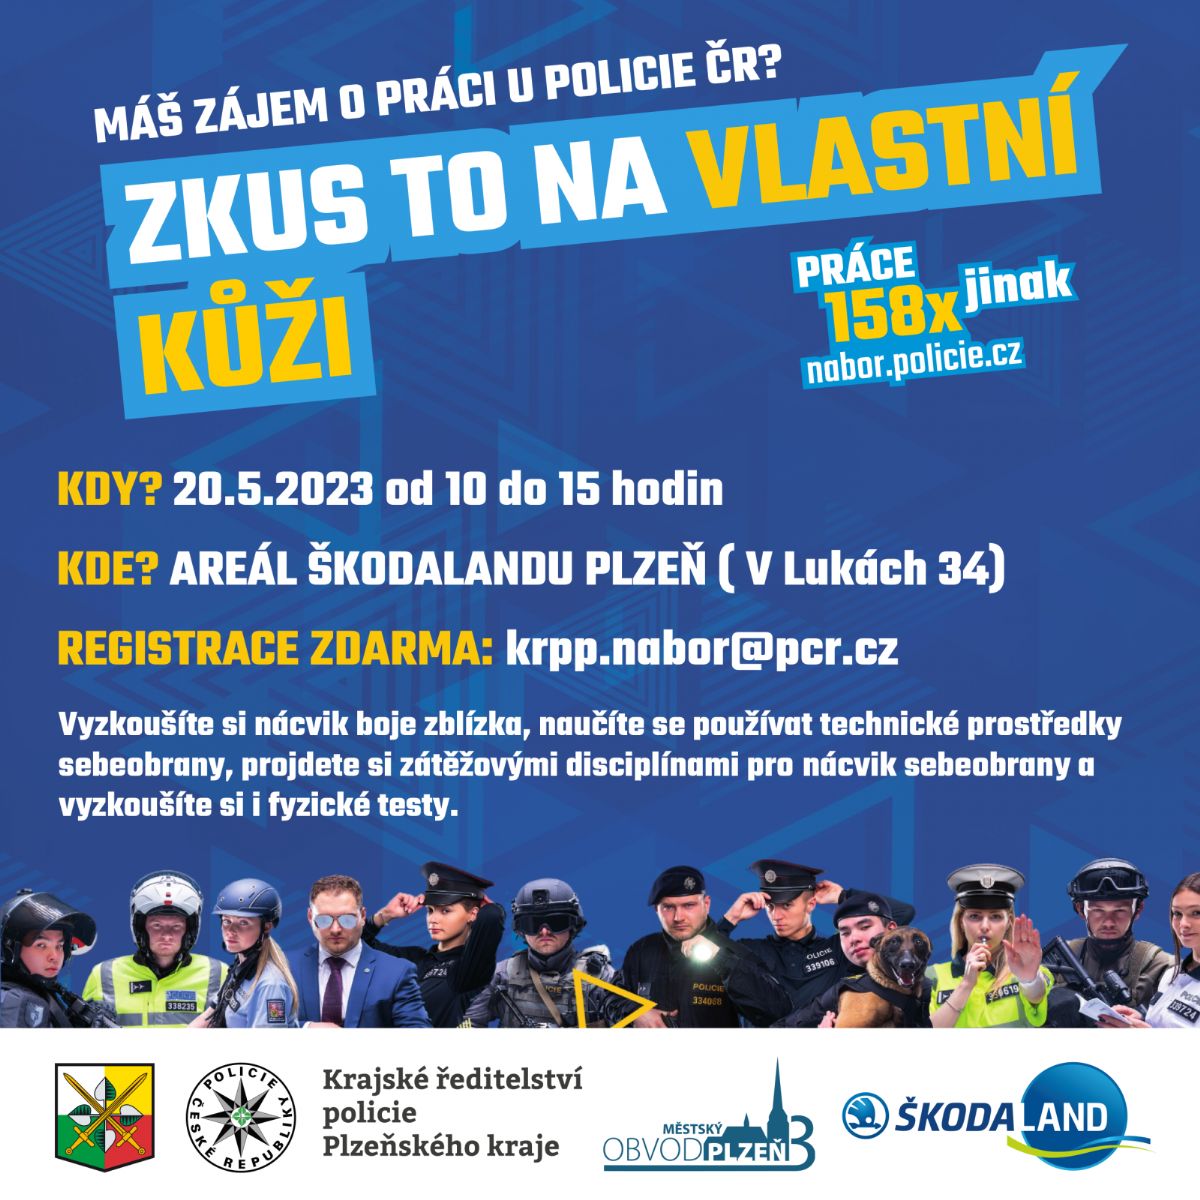 Policisté zvou veřejnost na trénink do Škodalandu. Obdržíte osvědčení